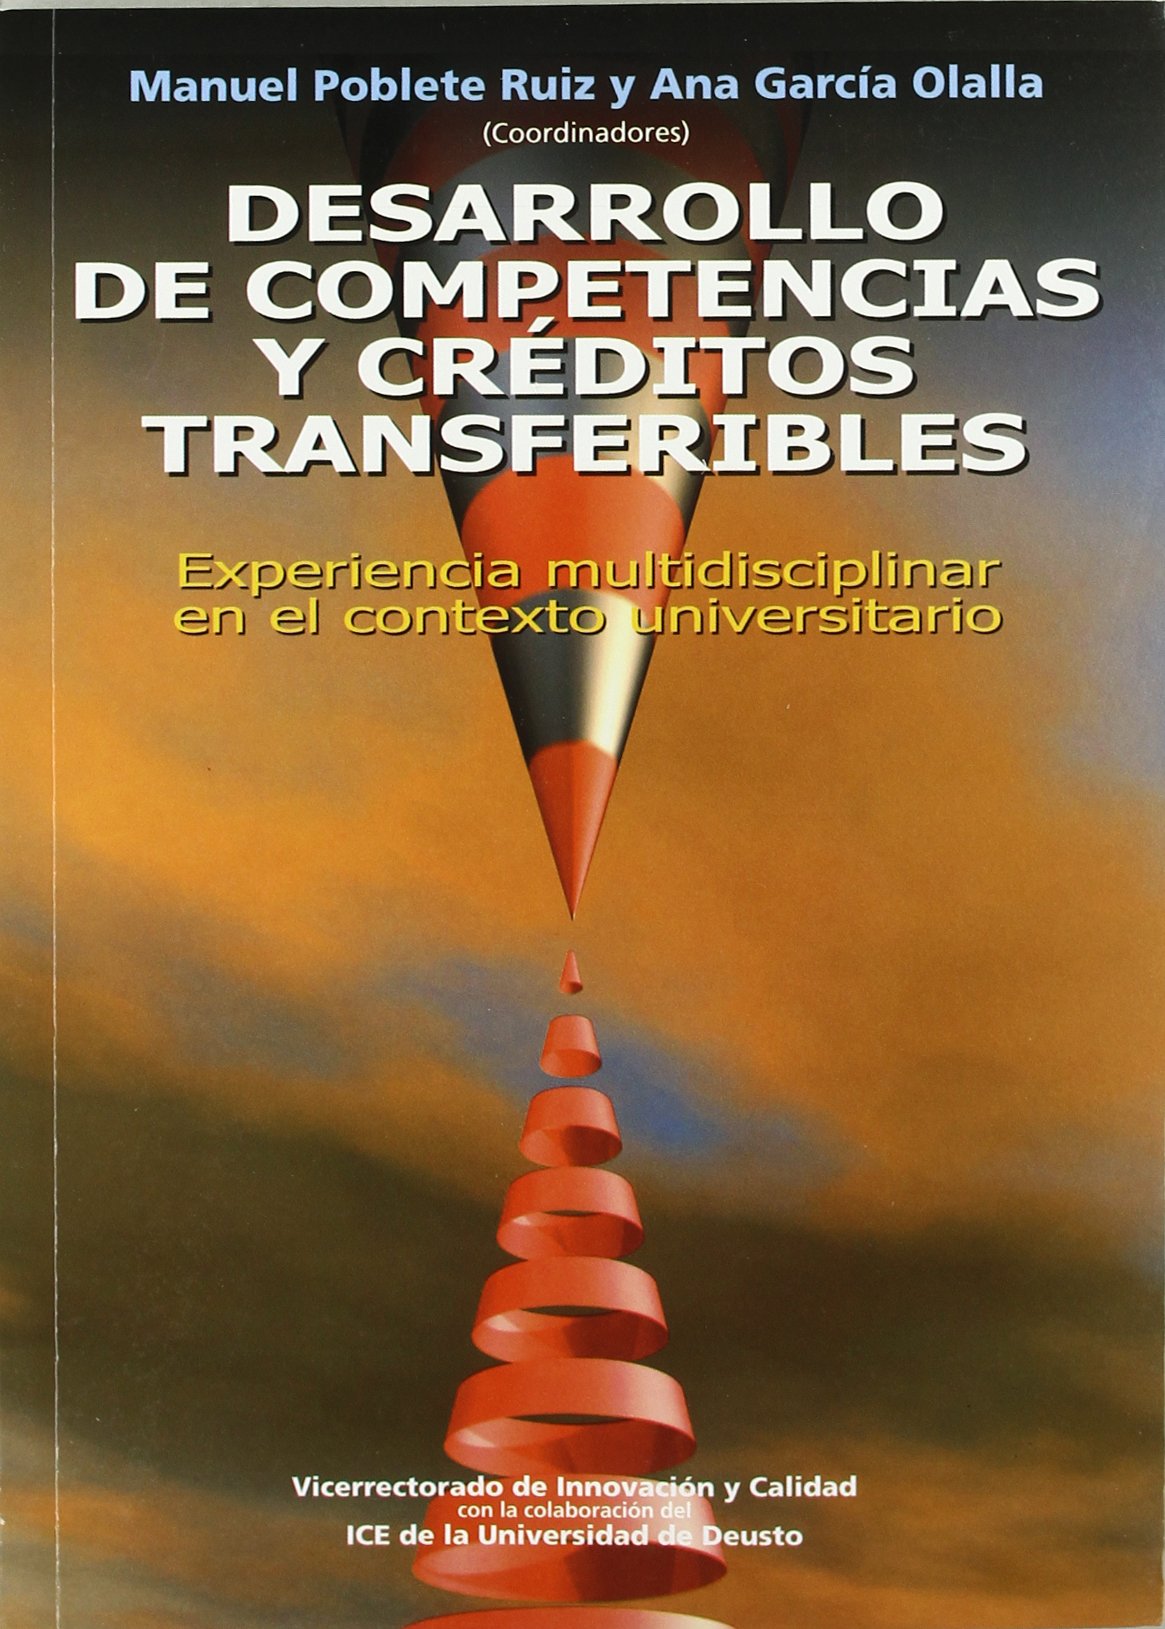 Imagen de portada del libro Desarrollo de competencias y créditos transferibles